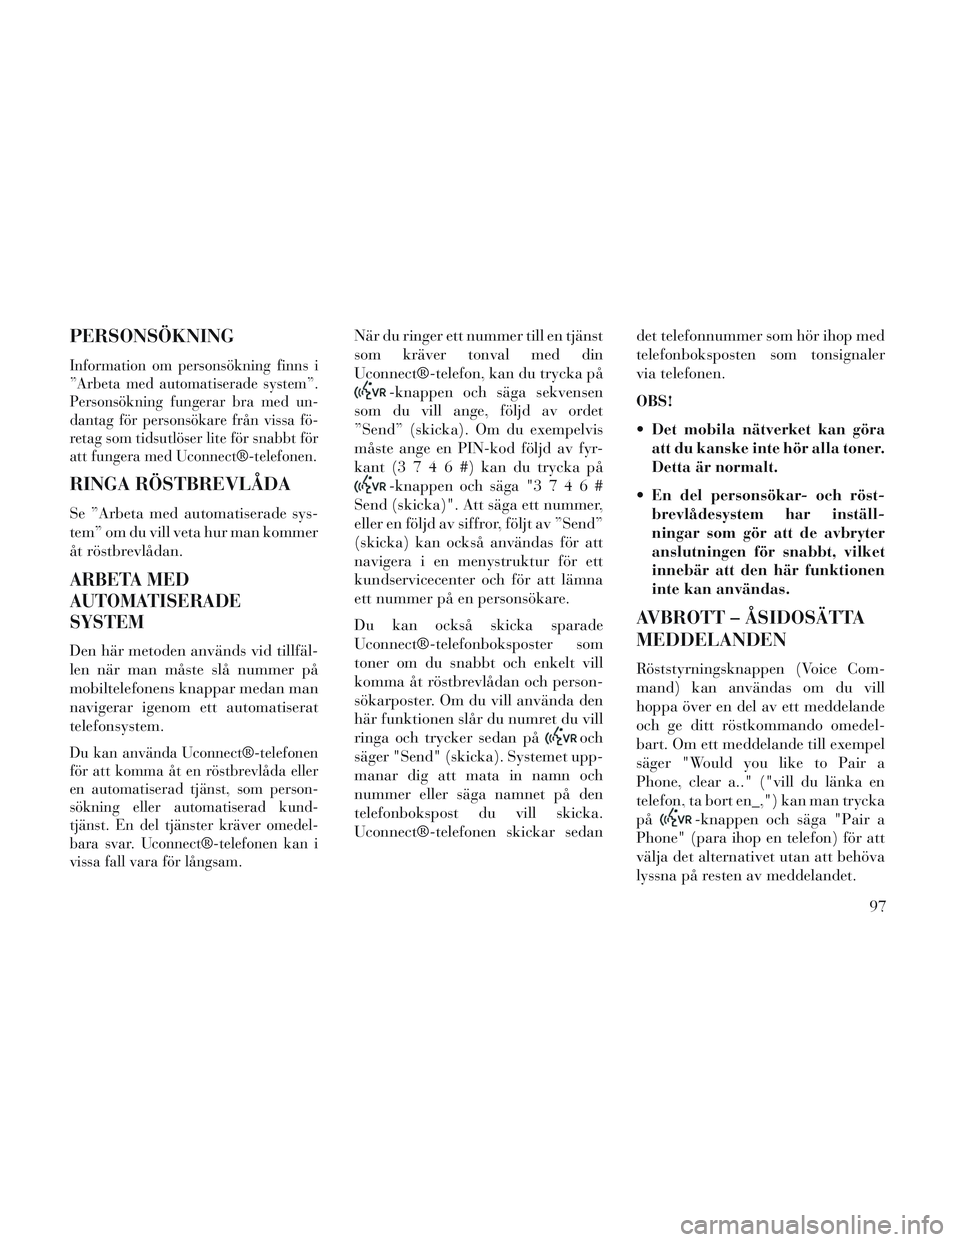 Lancia Voyager 2014  Drift- och underhållshandbok (in Swedish) PERSONSÖKNING
Information om personsökning finns i
”Arbeta med automatiserade system”.
Personsökning fungerar bra med un-
dantag för personsökare från vissa fö-
retag som tidsutlöser lite 